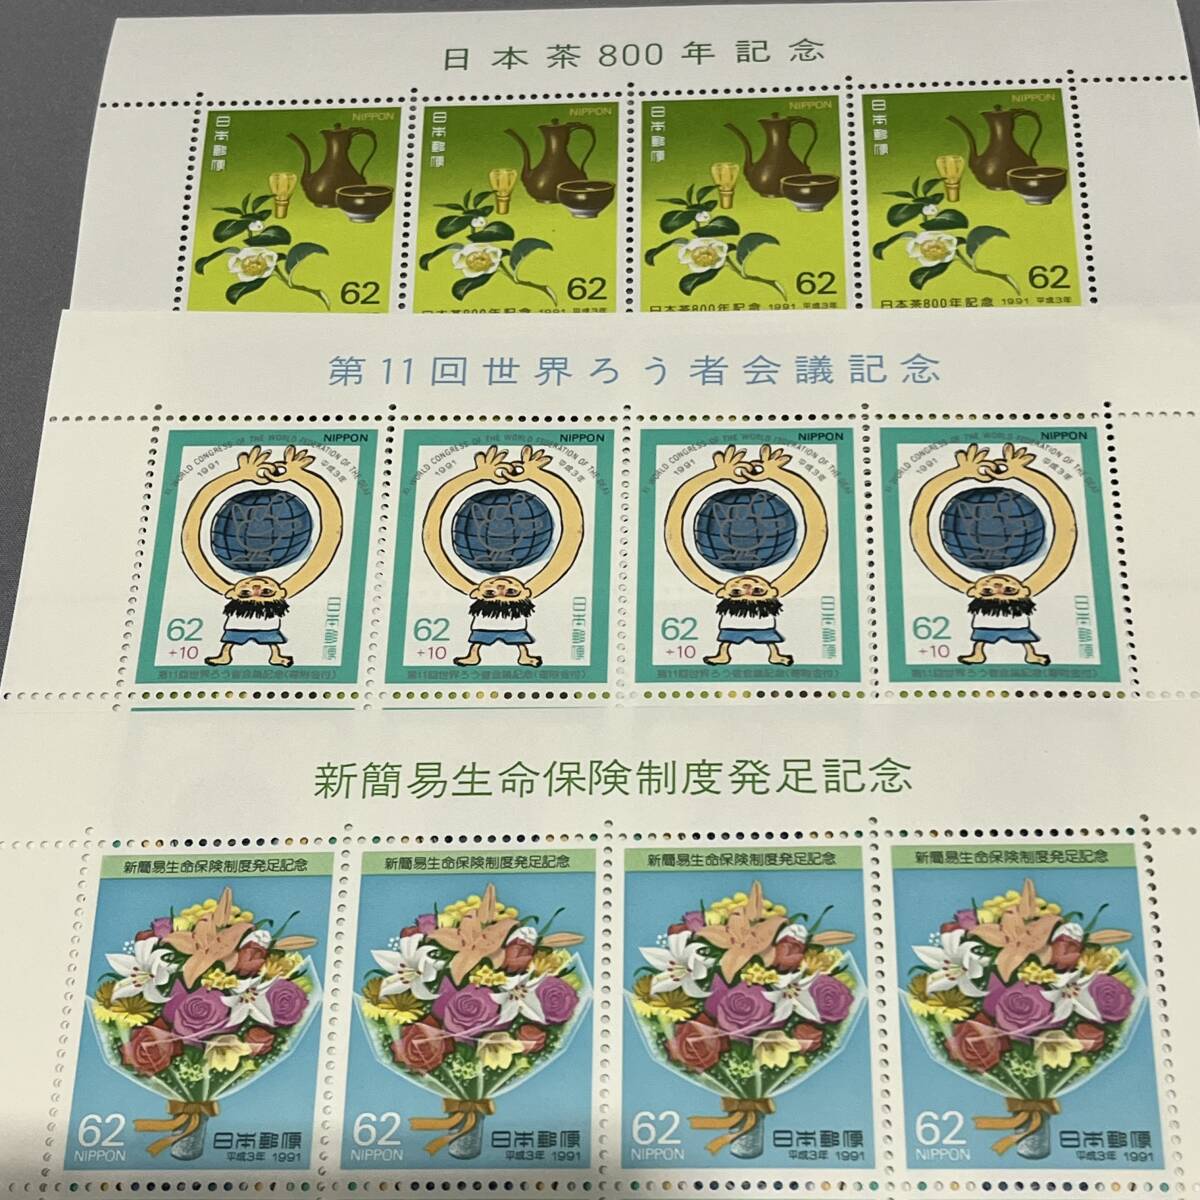 【未使用品】記念切手シート 世界 国際シリーズ色々 62円切手 320枚 額面 19840円の画像8